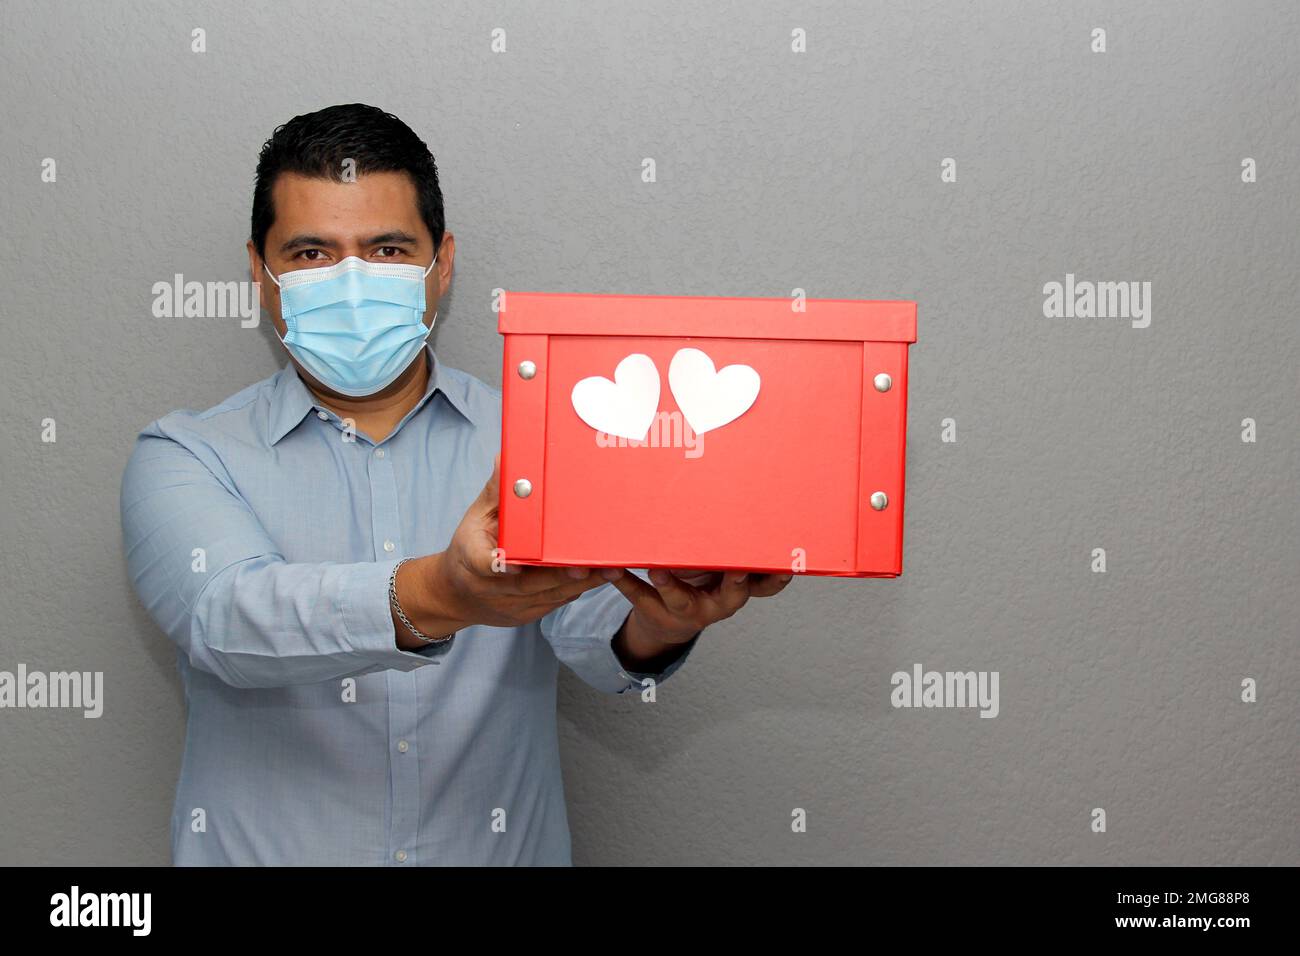 San Valentino: Uomo latino con maschera di protezione e scatola